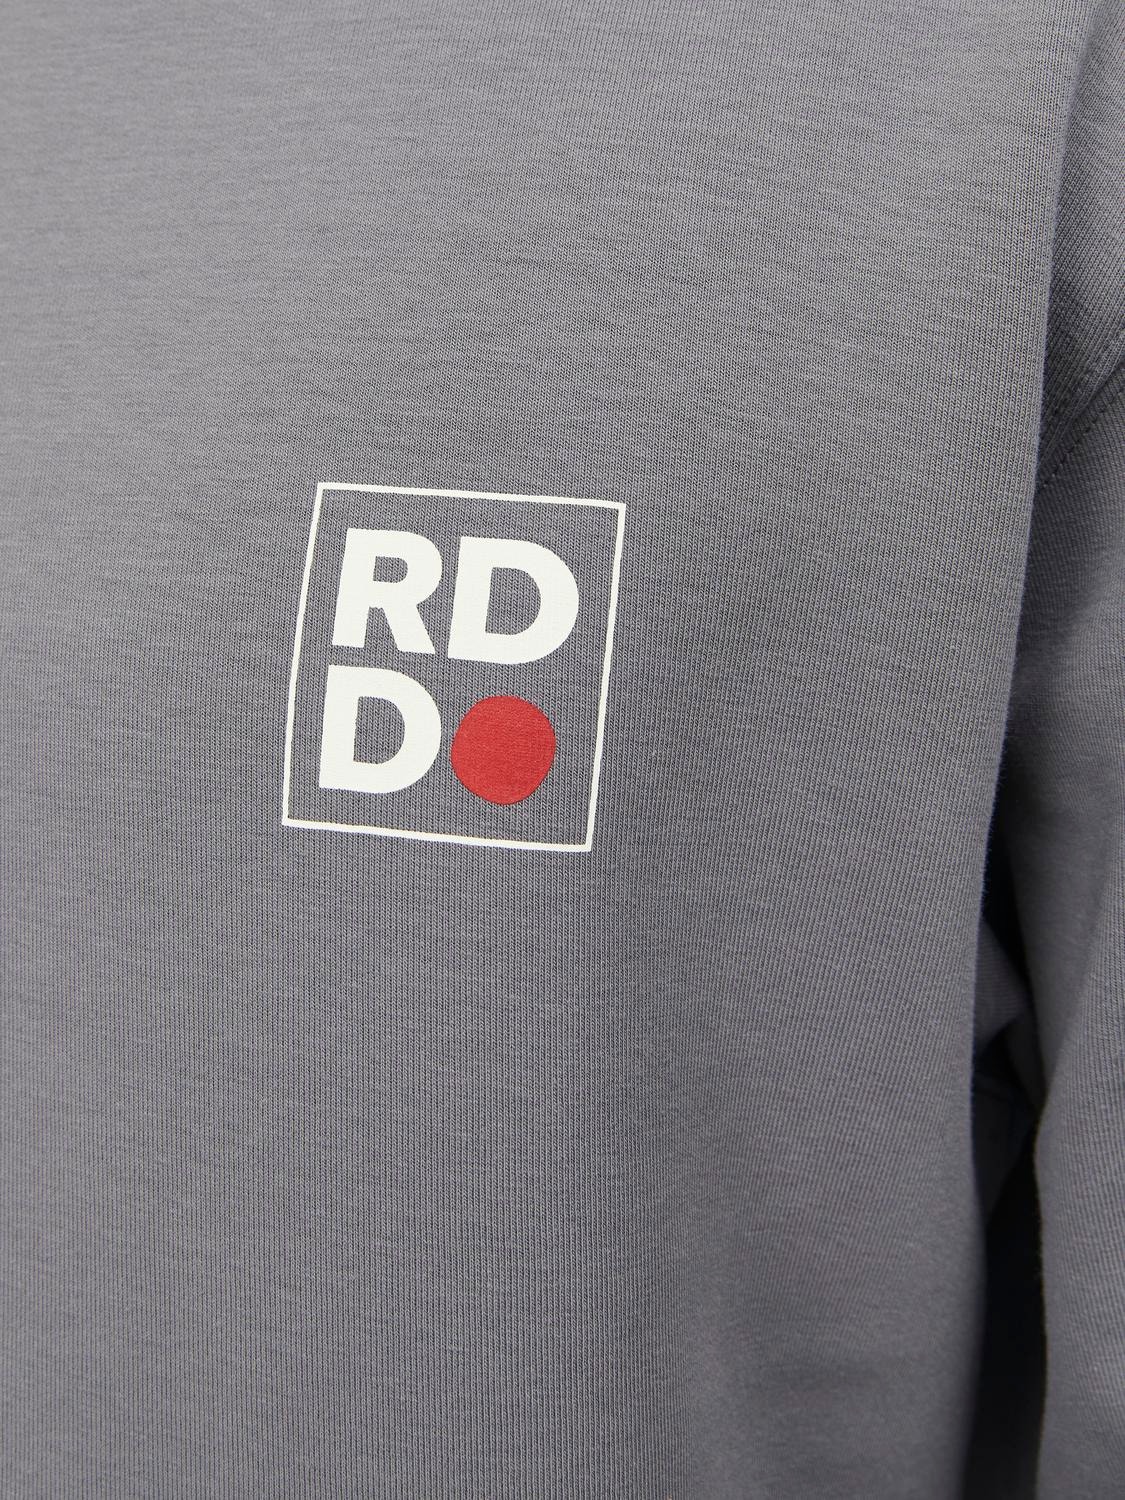 Jack & Jones RDD Z logo Bluza z okrągłym dekoltem -Charcoal Gray - 12230356